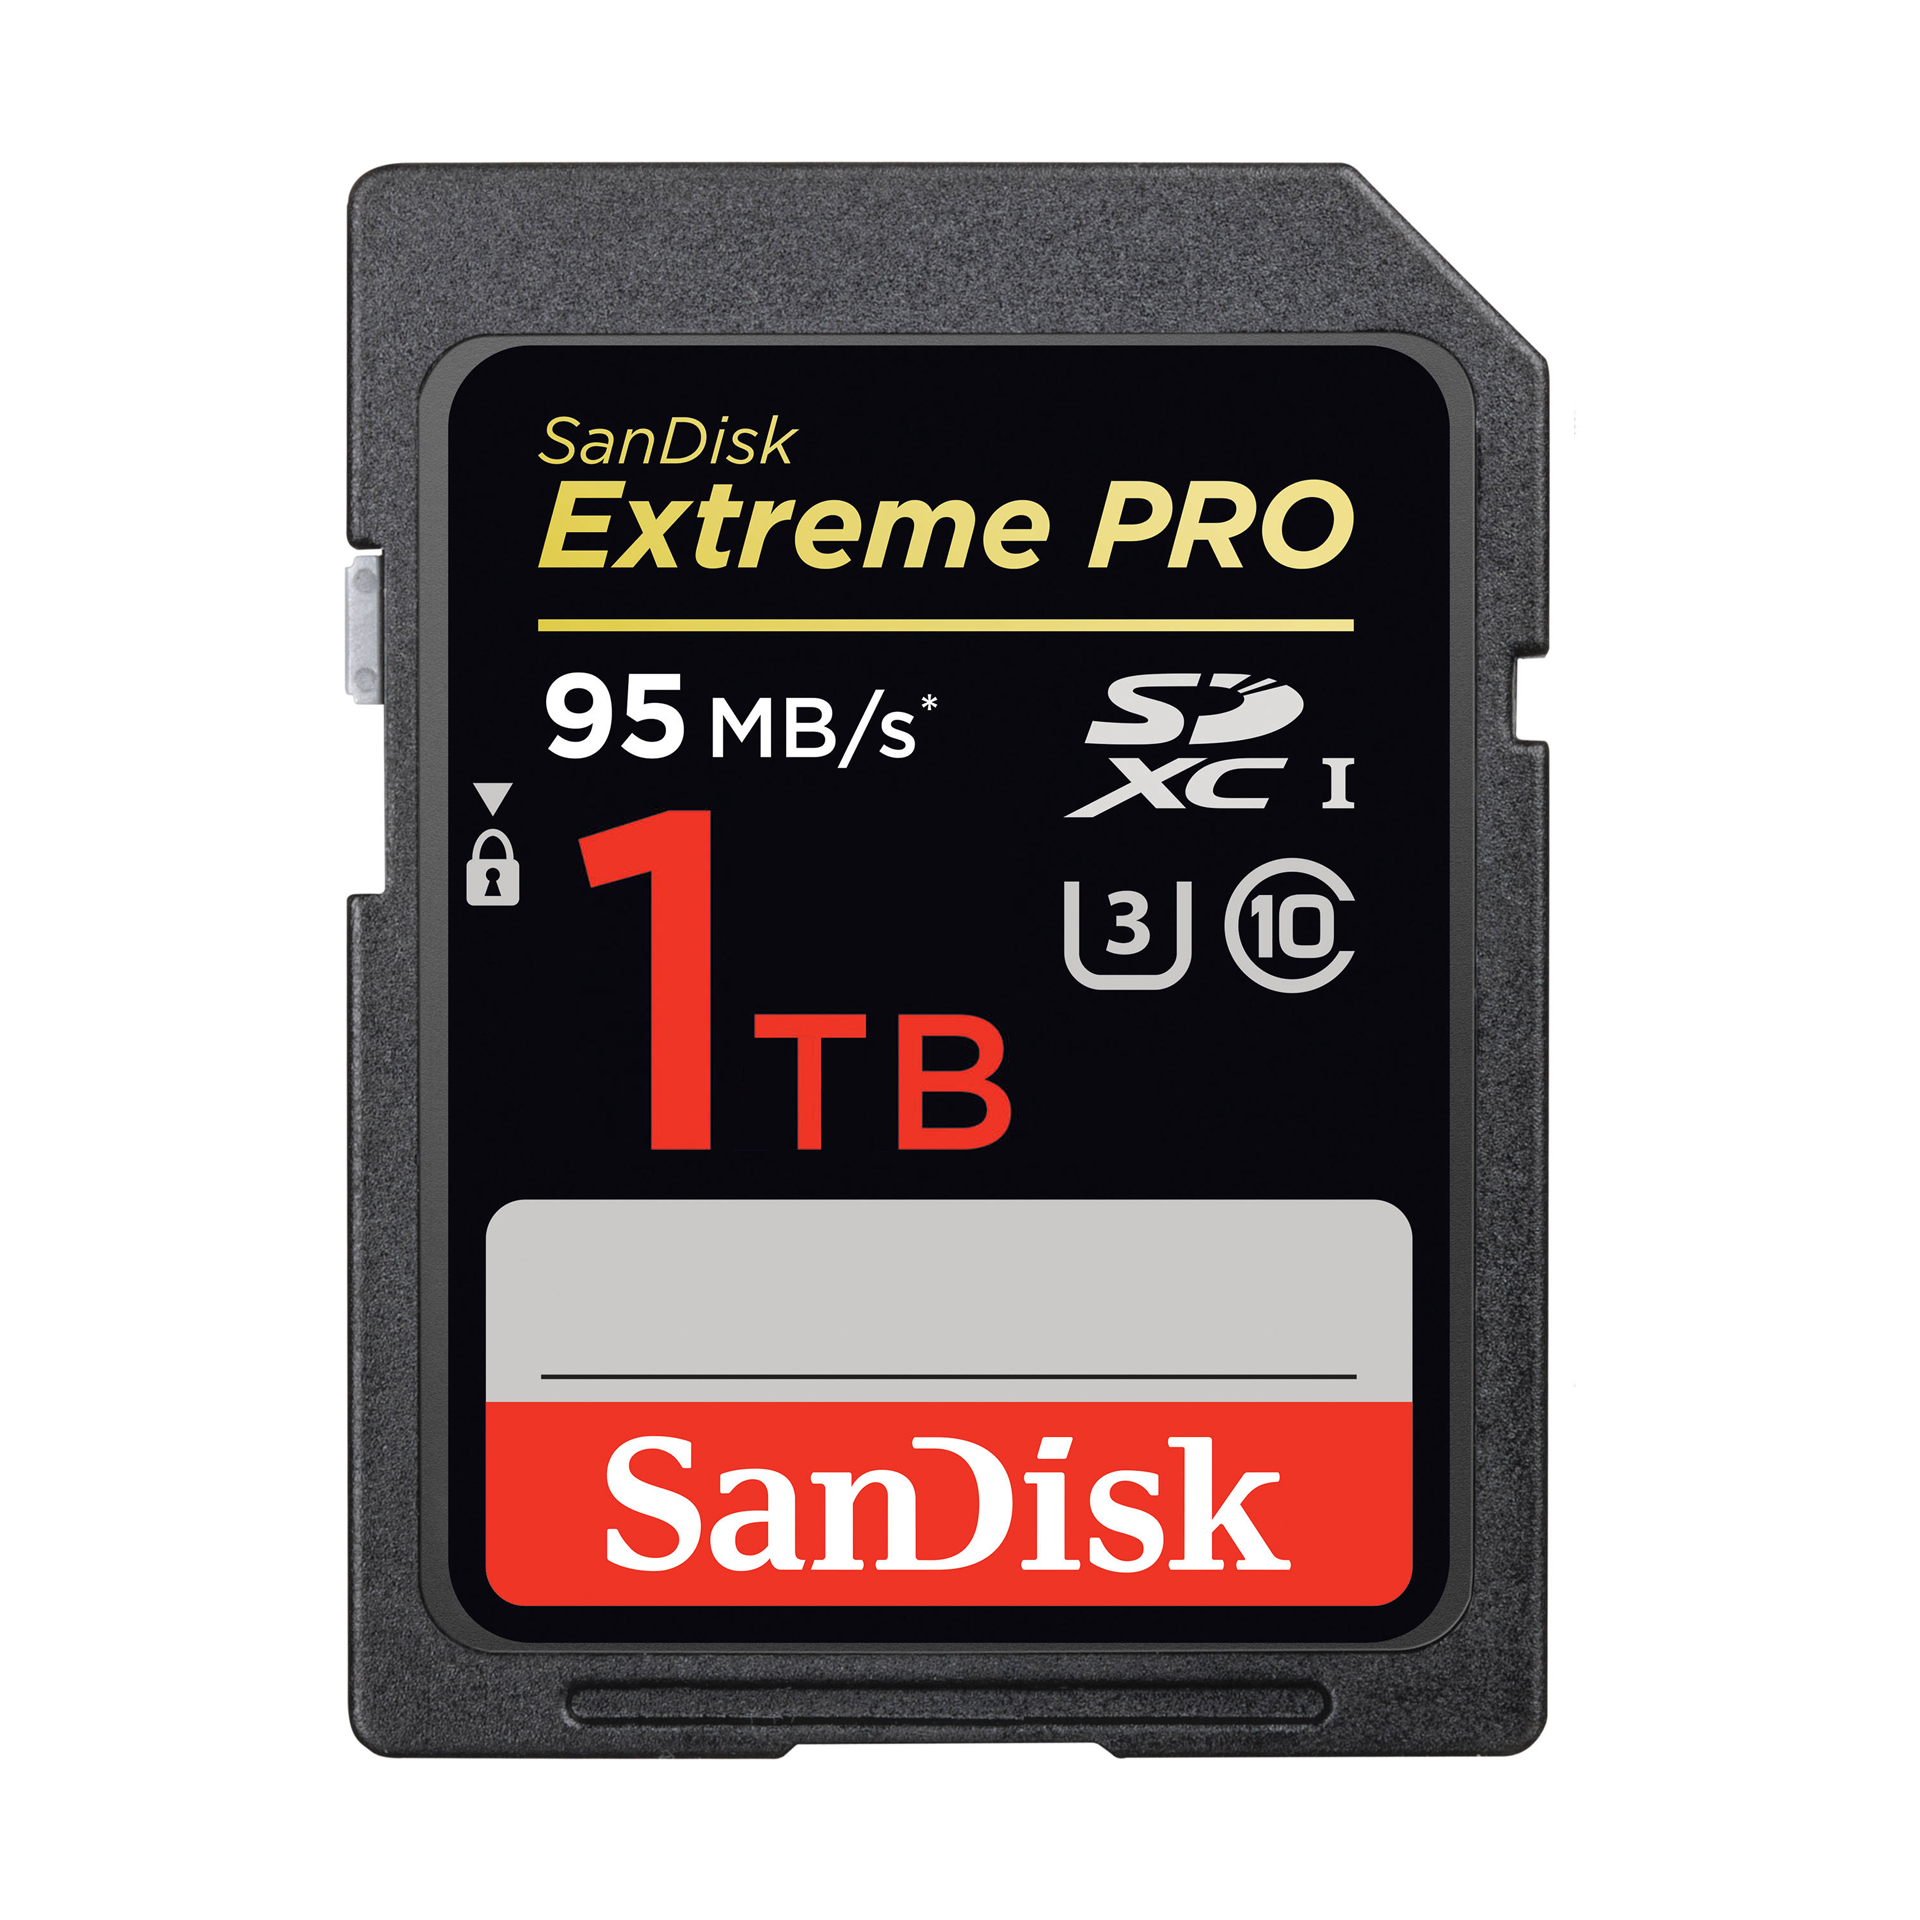 SanDisk anuncia una tarjeta SD de 1 TB de almacenamiento